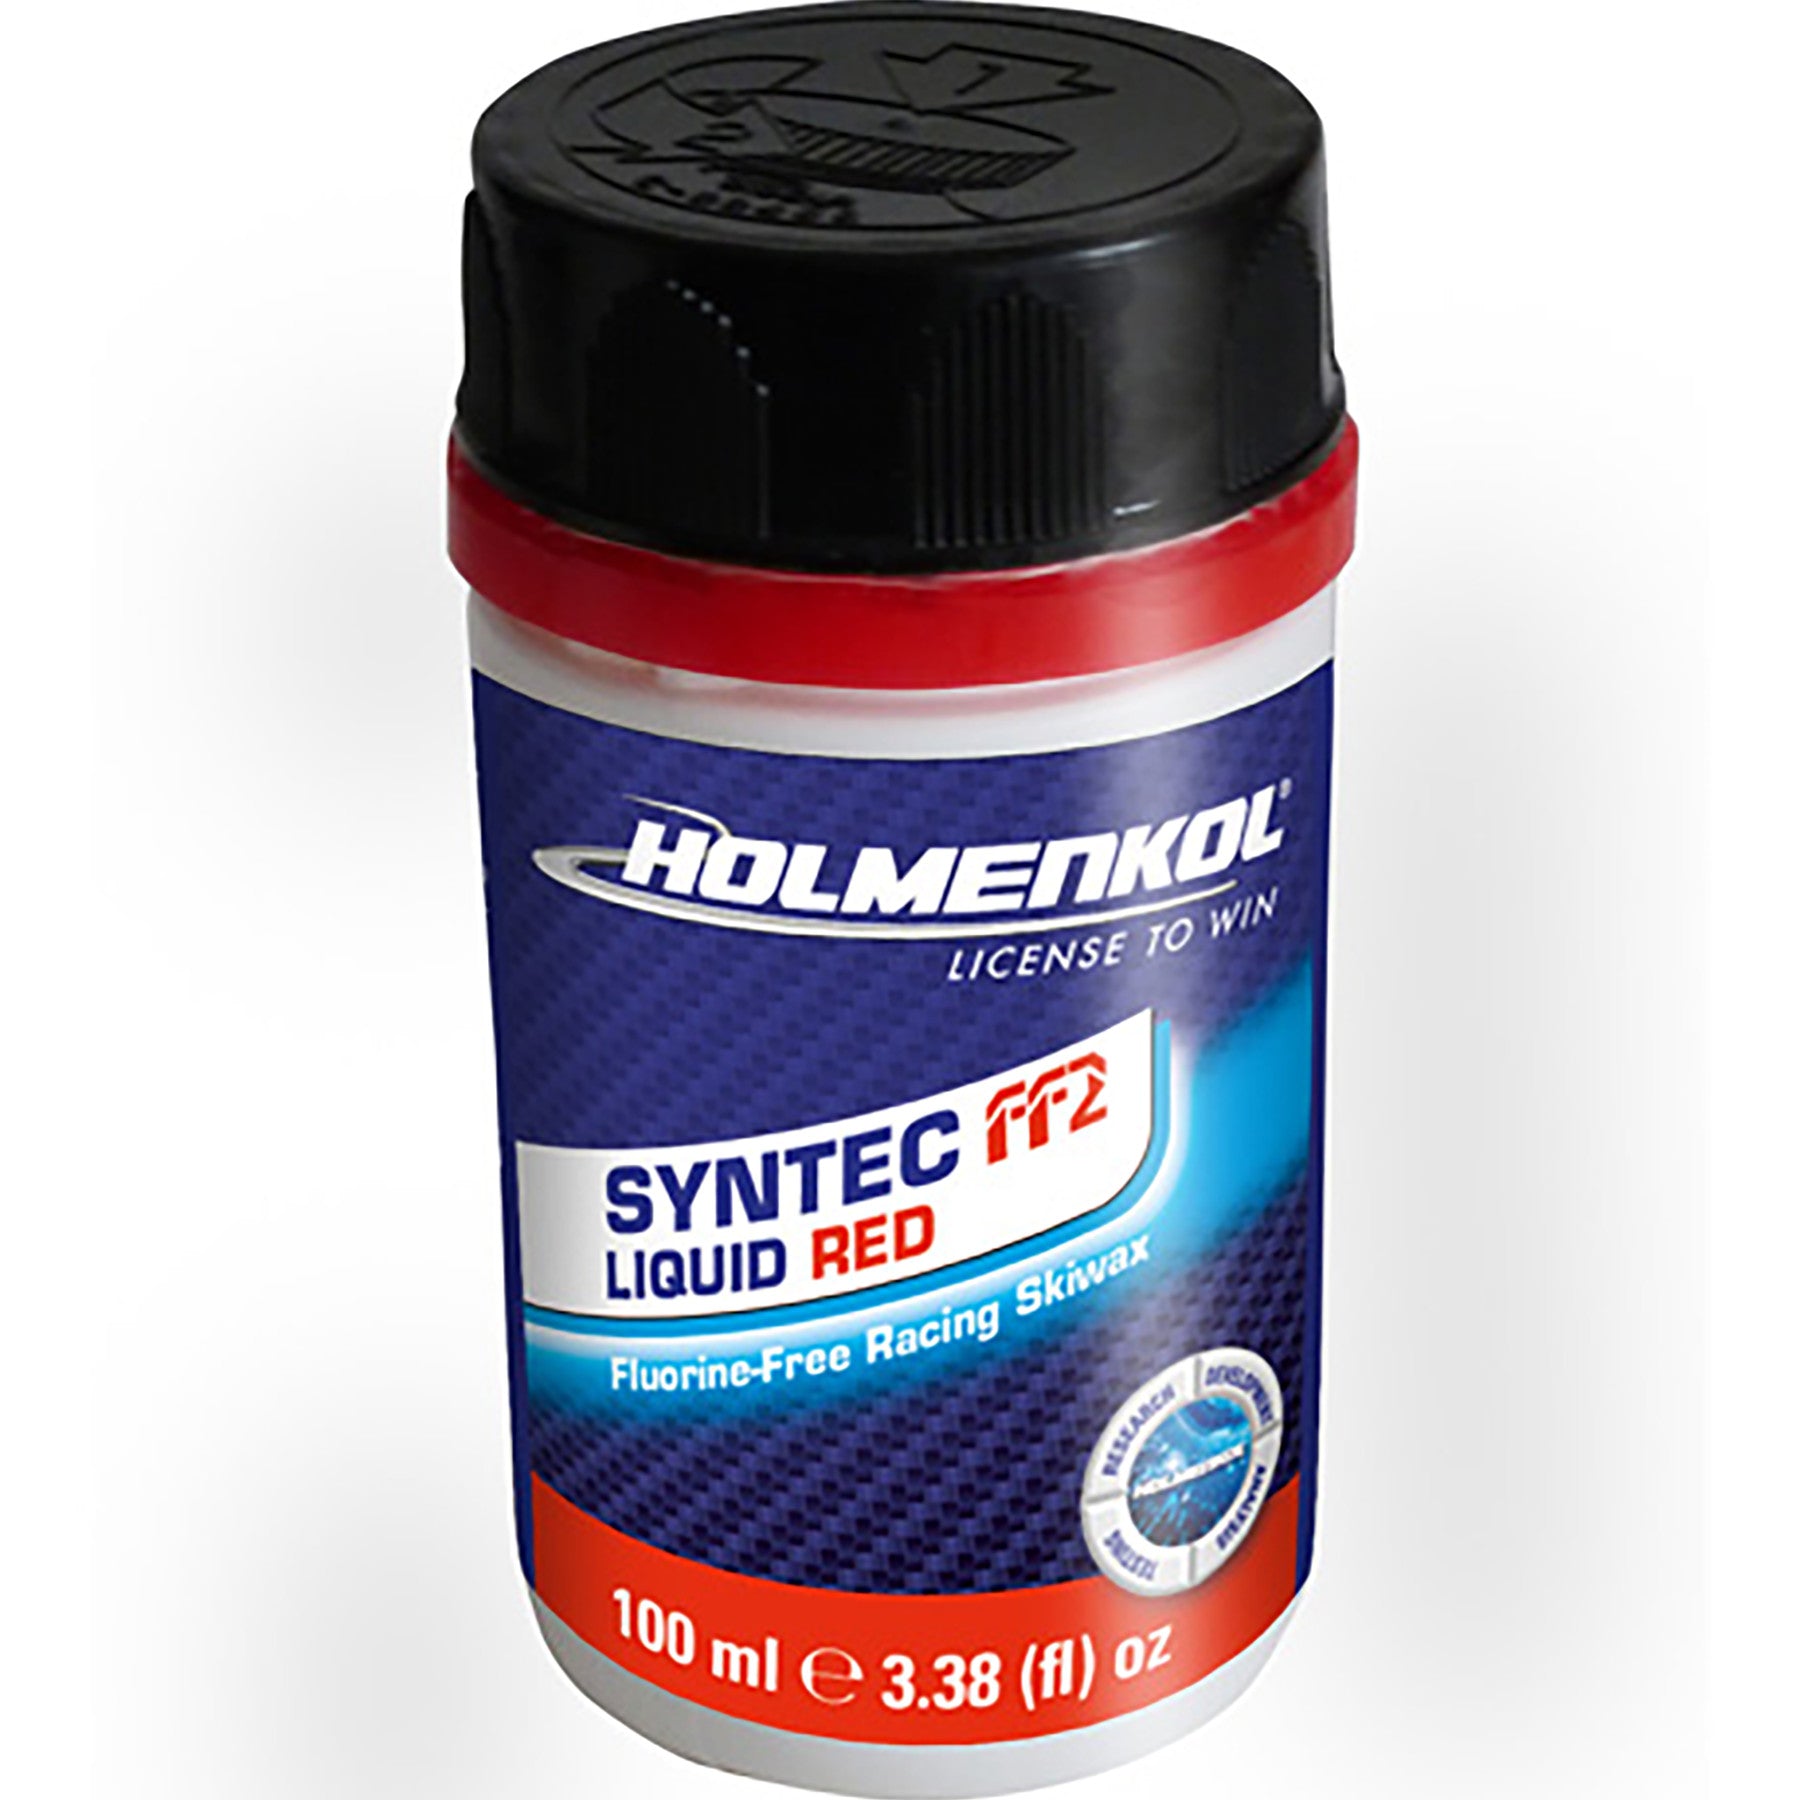 Holmenkol Syntec FF2 Liquid Wax